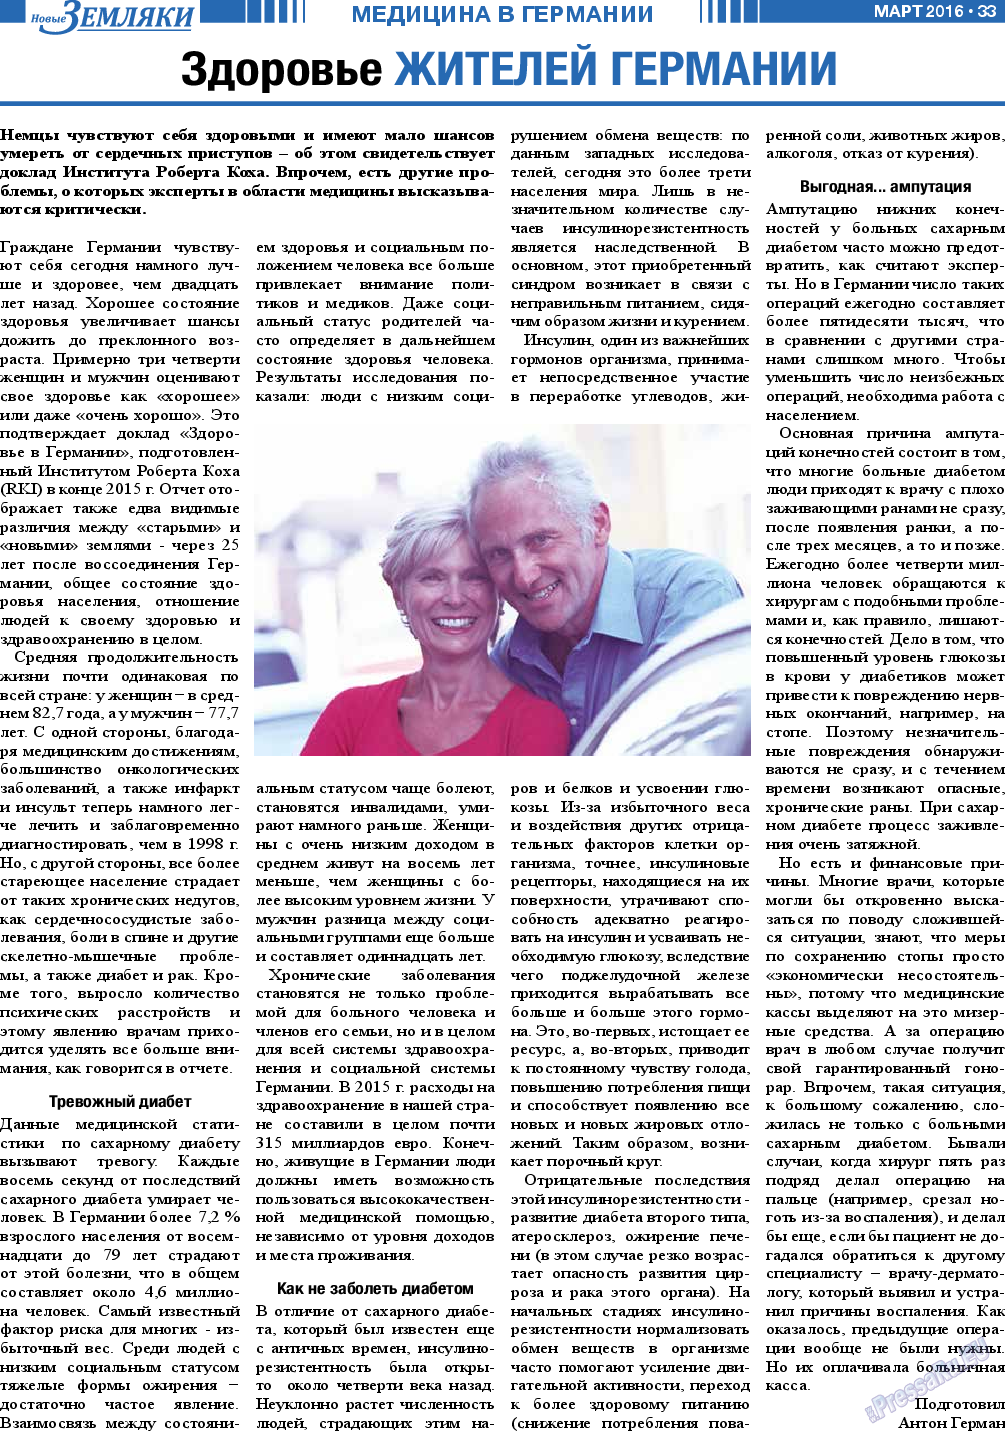 Новые Земляки, газета. 2016 №3 стр.33